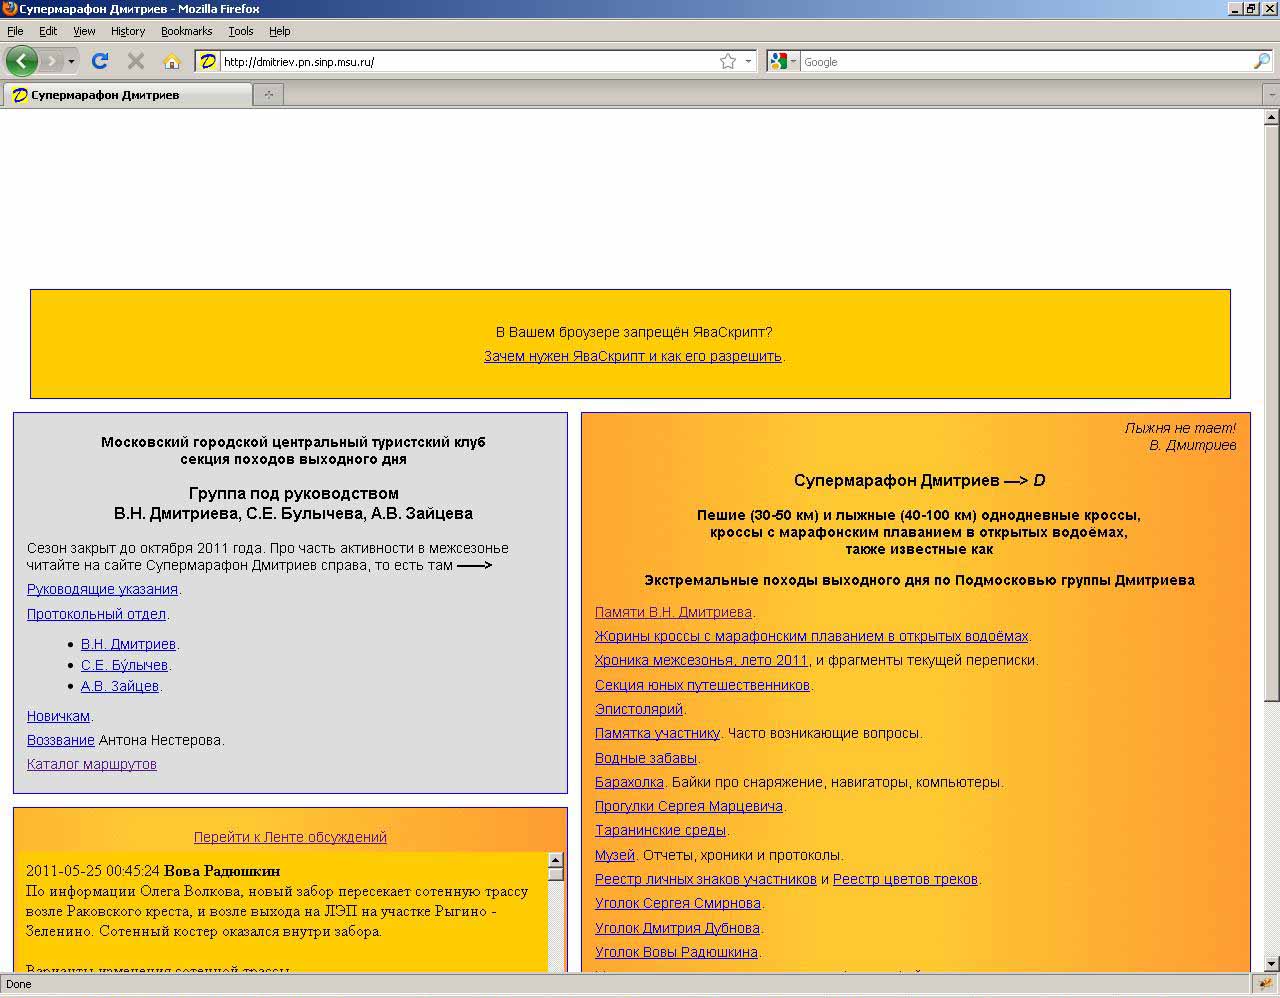 Оглавление сайта в броузере Firefox с запрещенным ЯваСкриптом